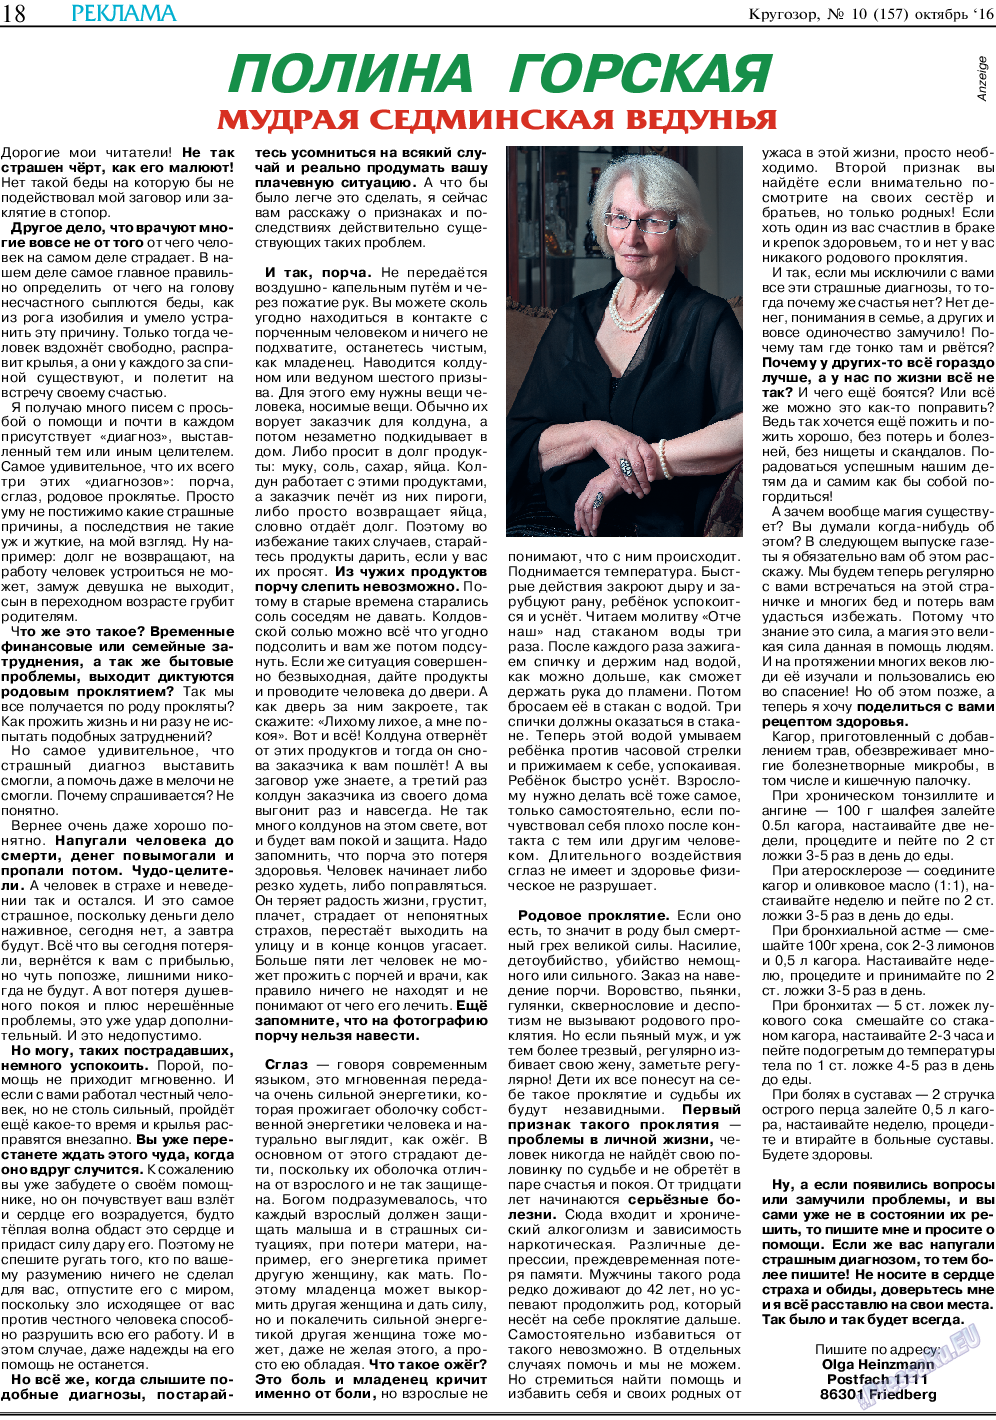 Кругозор, газета. 2016 №10 стр.18